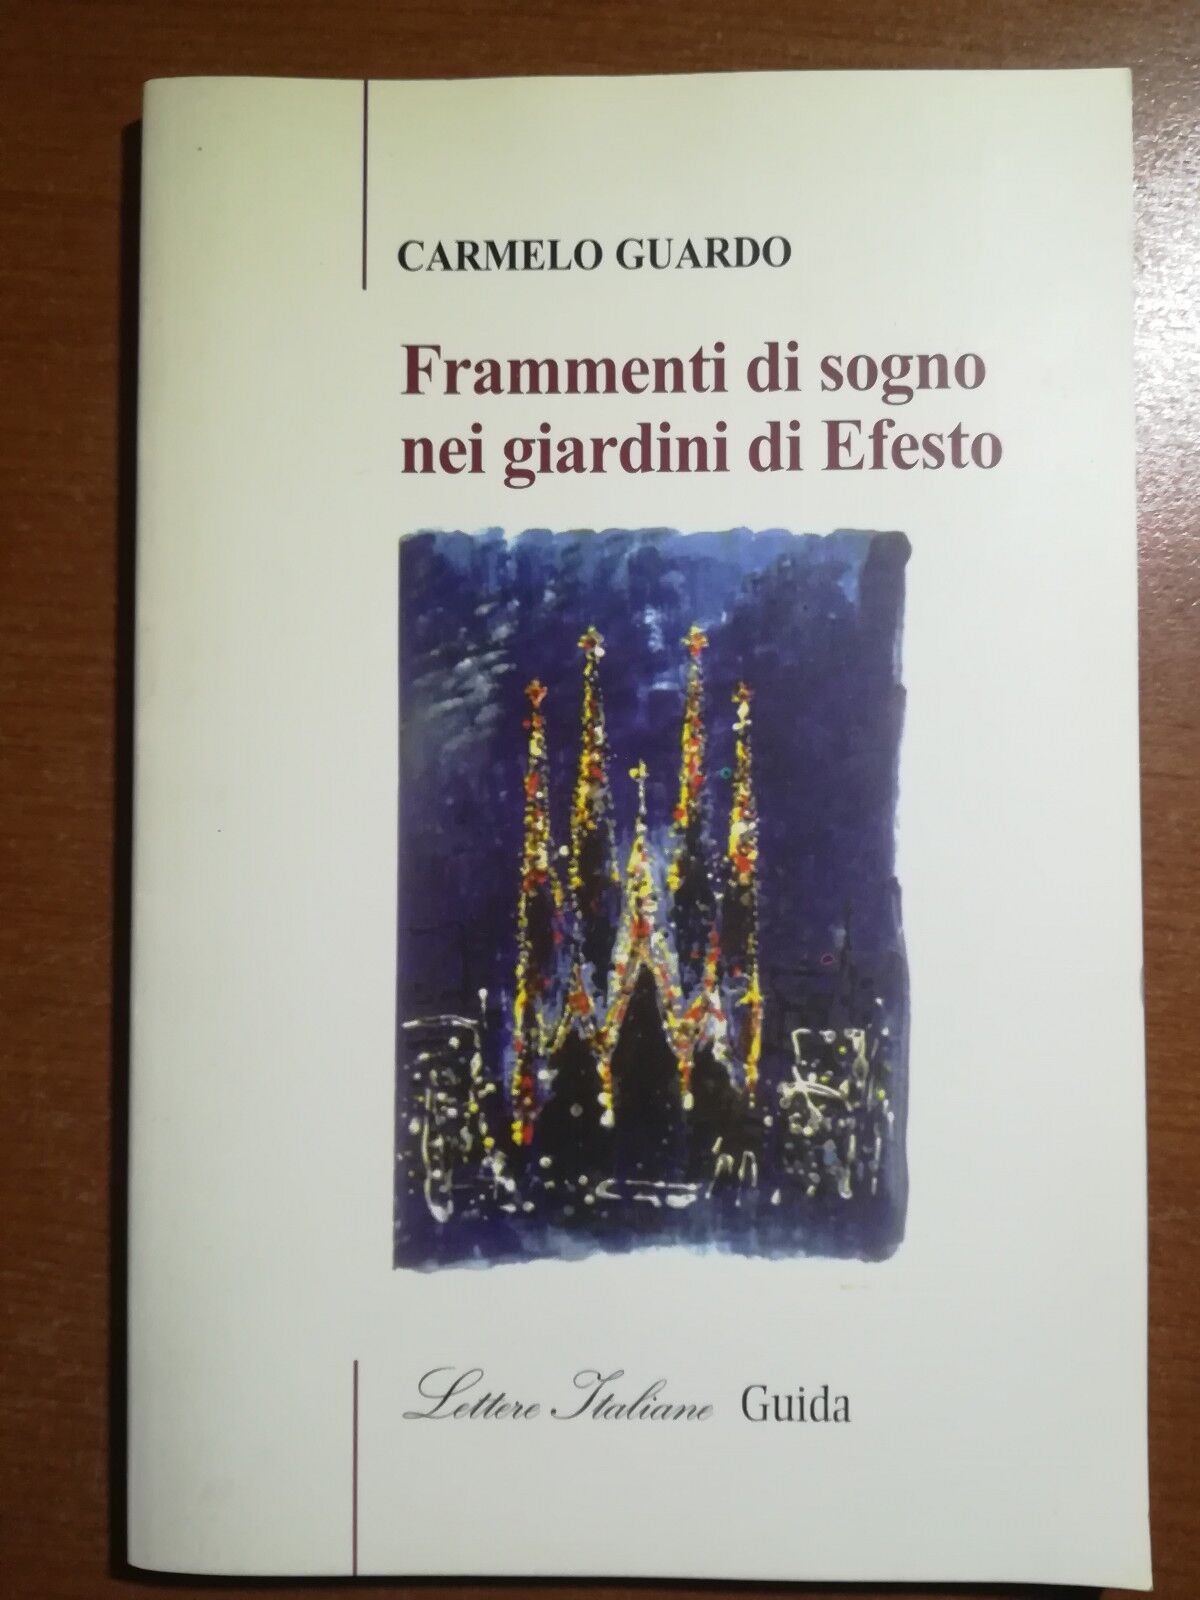 Frammenti di sogno nei giardini di Efesto - C.Guardo - guida - 2003 - M